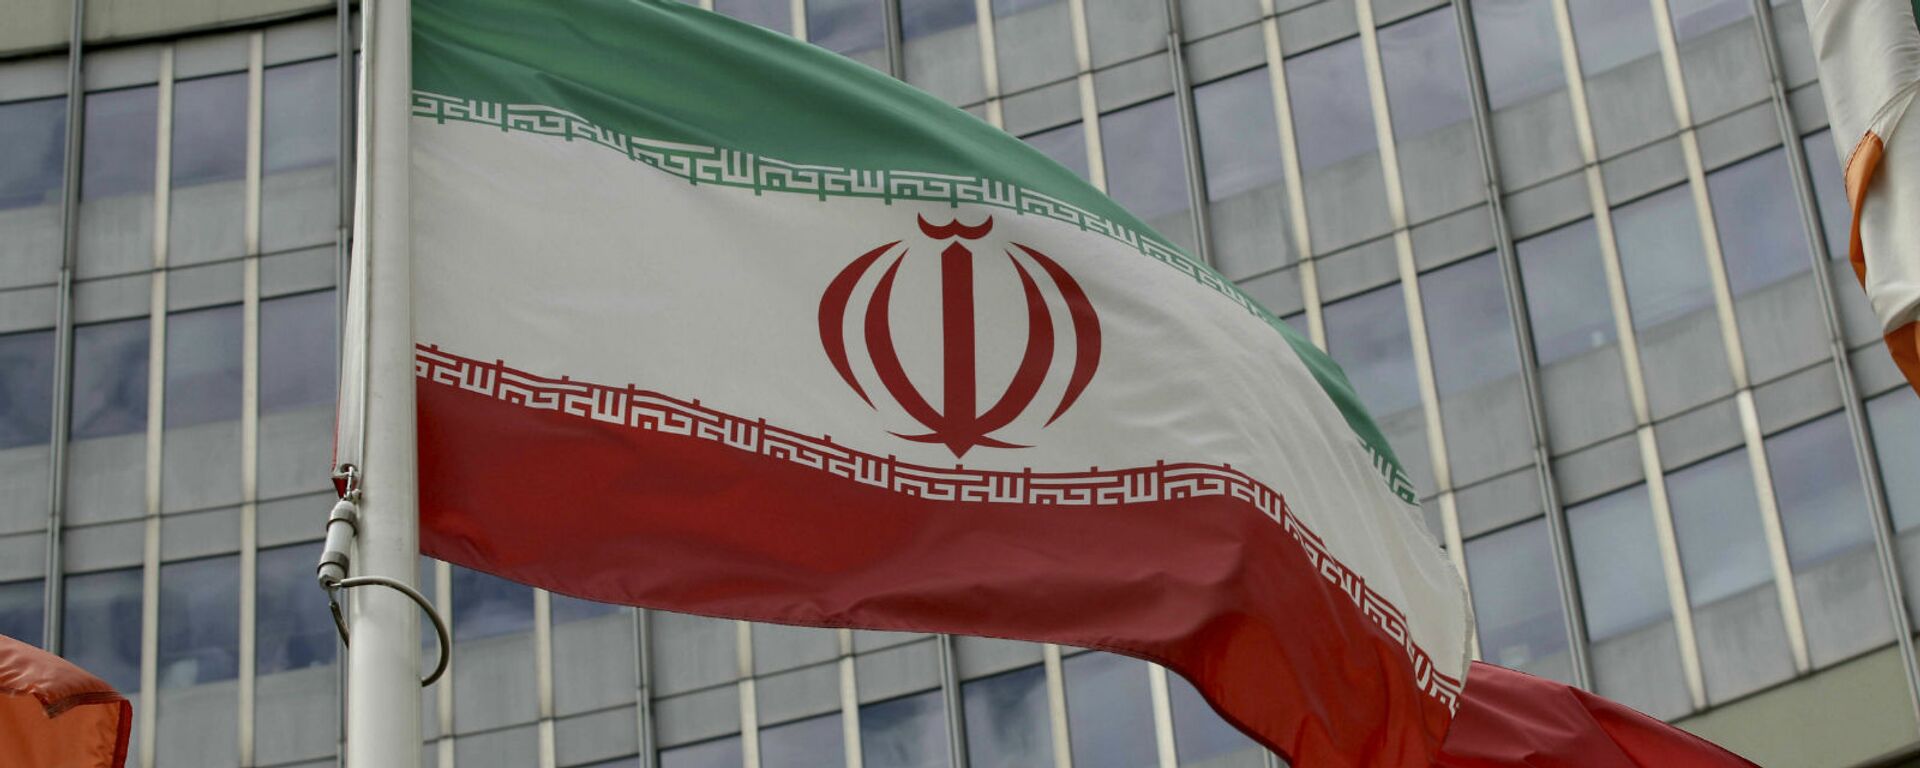 Иранский флаг развевается у здания ООН, в котором находится офис Международного агентства по атомной энергии МАГАТЭ (10 июля 2019). Вена - Sputnik Армения, 1920, 28.07.2021